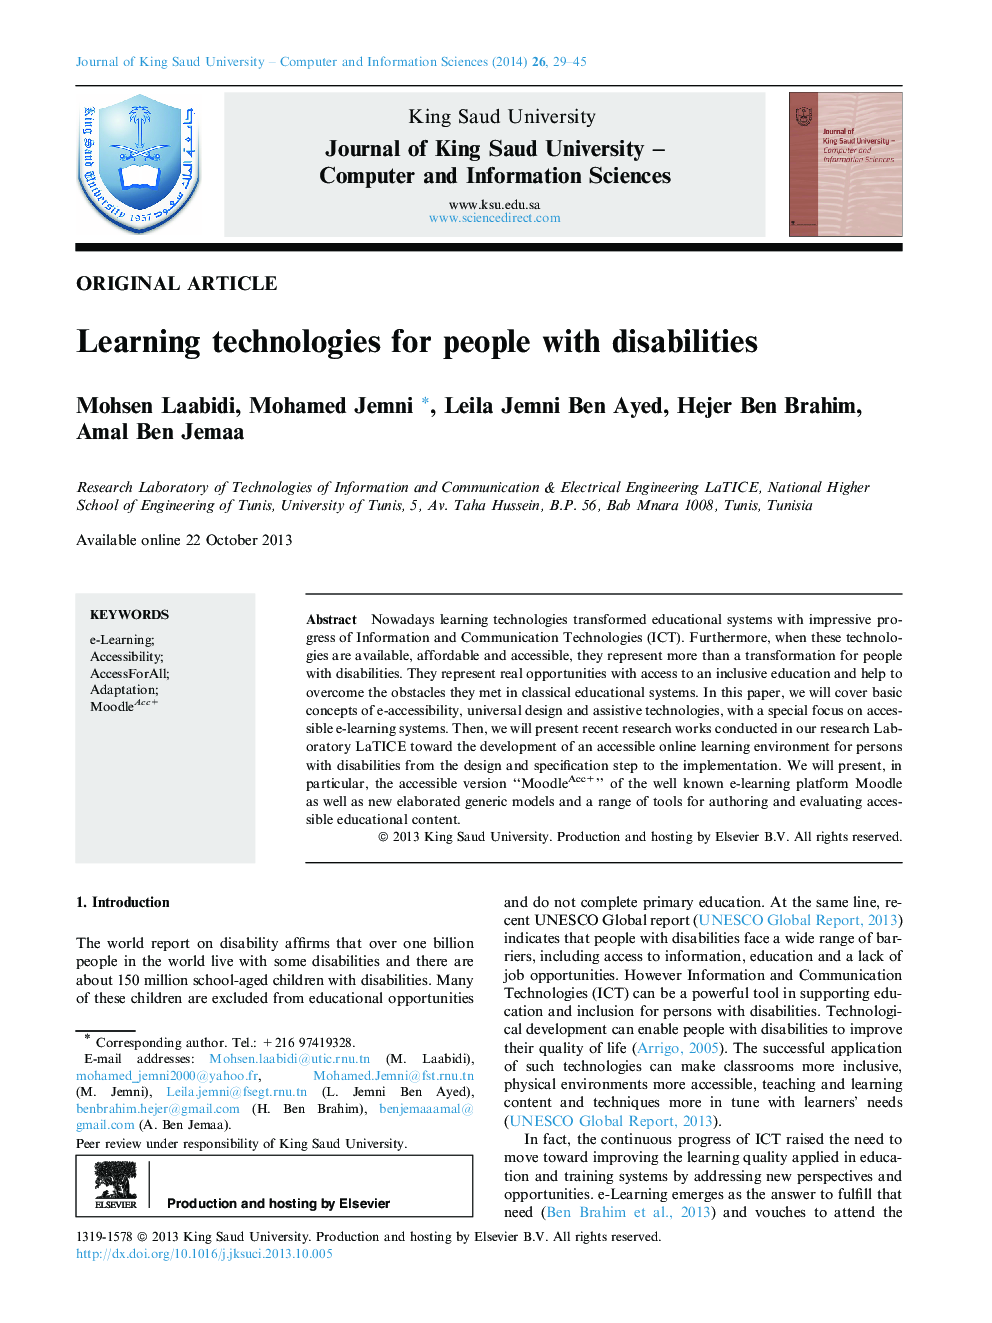 فناوری های یادگیری برای افراد معلول 